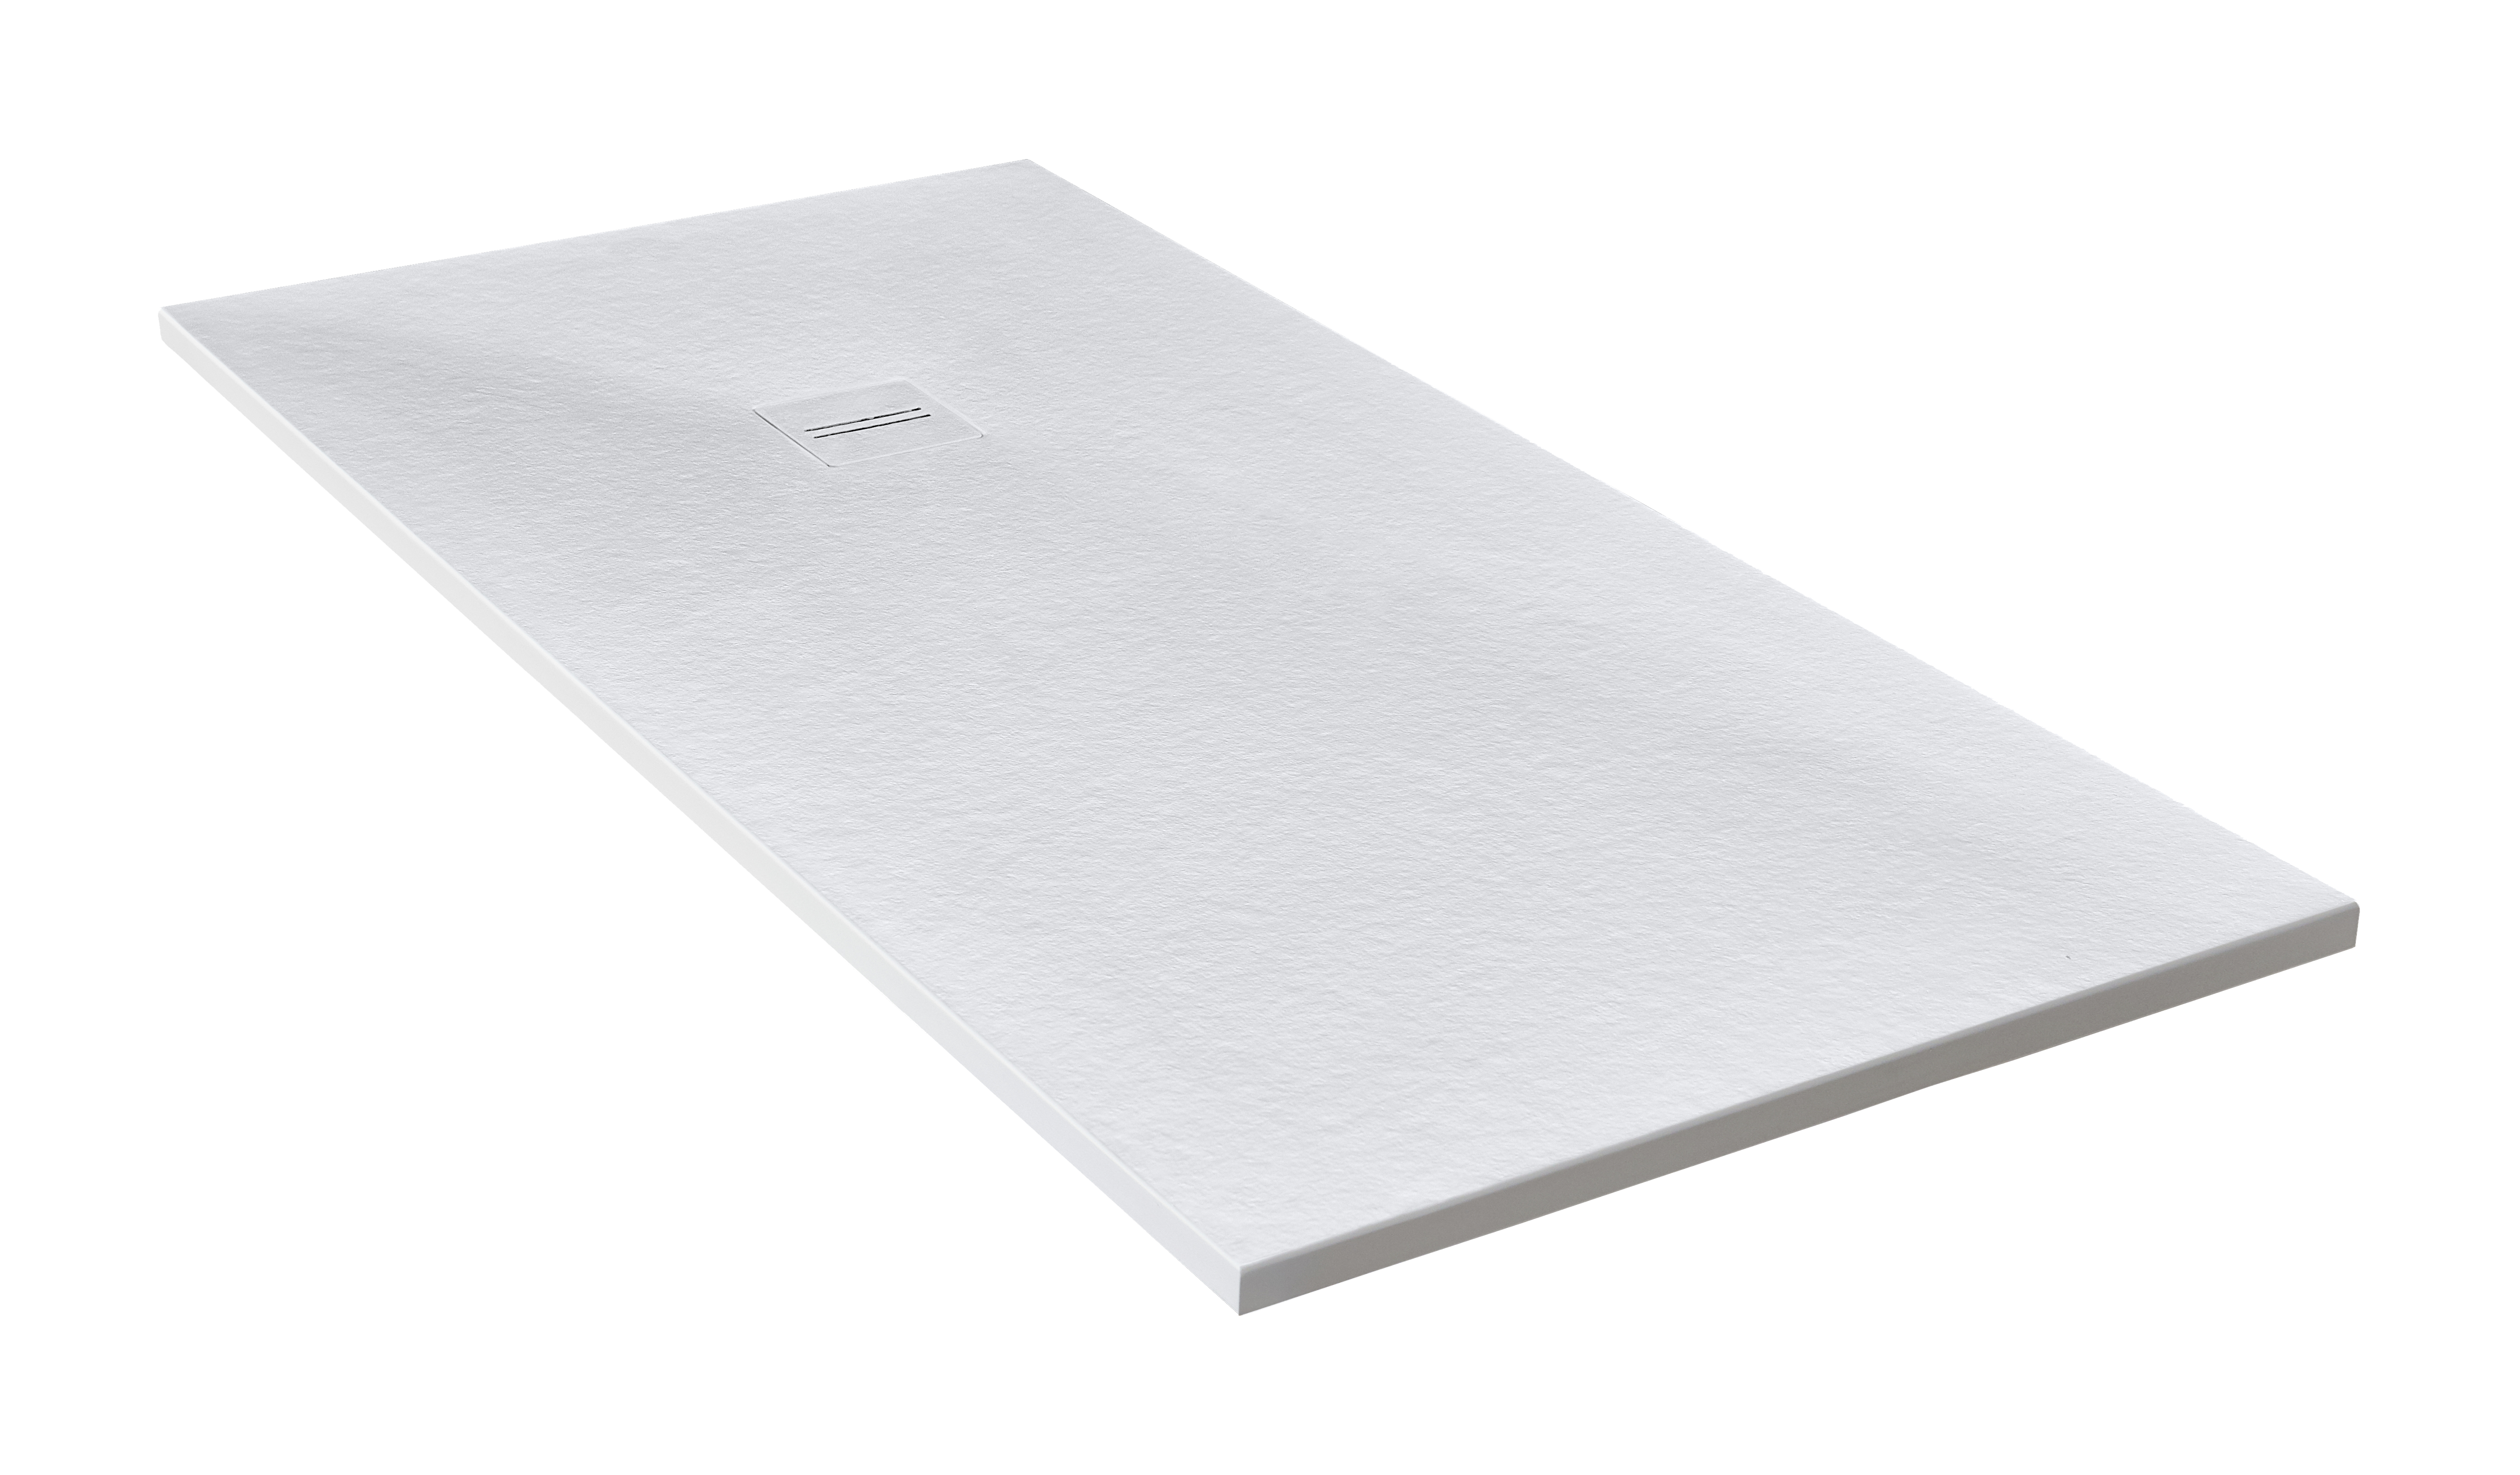 Plato de ducha cosmos 180x80 cm blanco